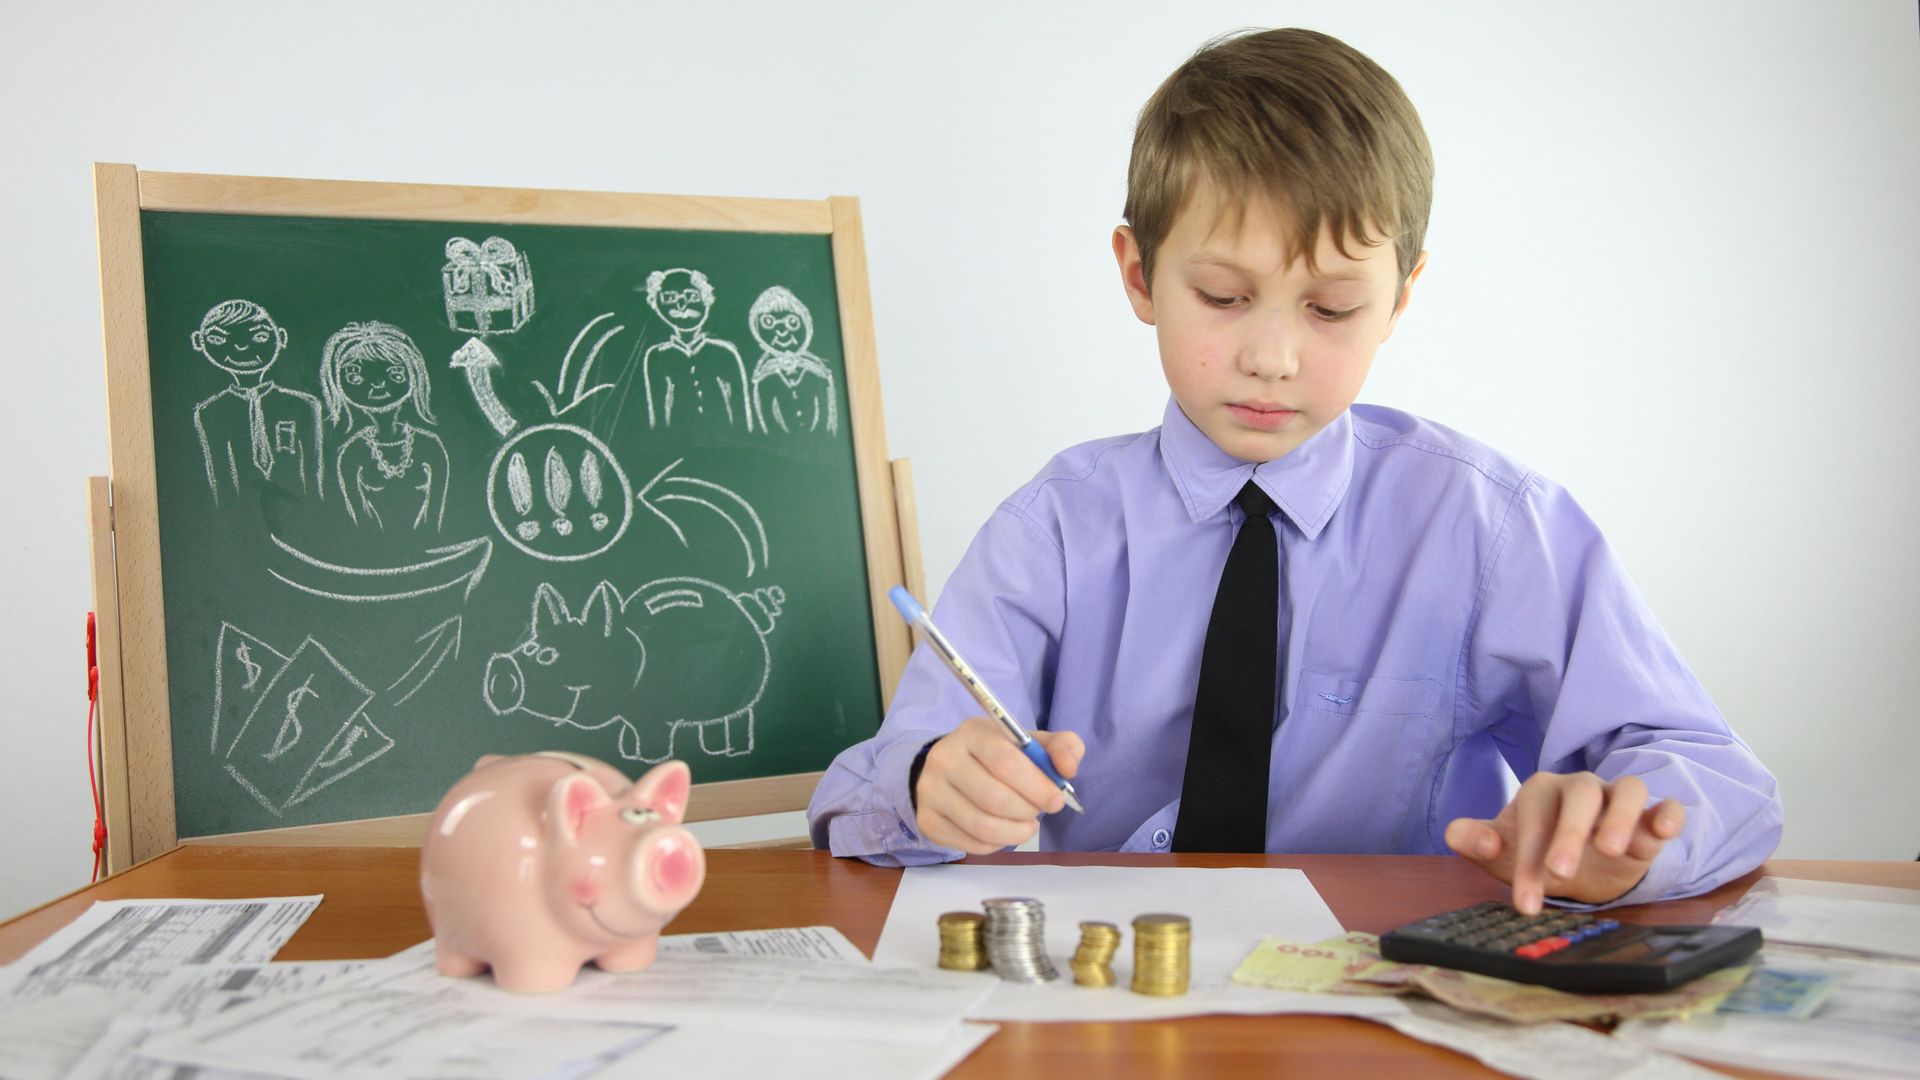 teaching kids about debt